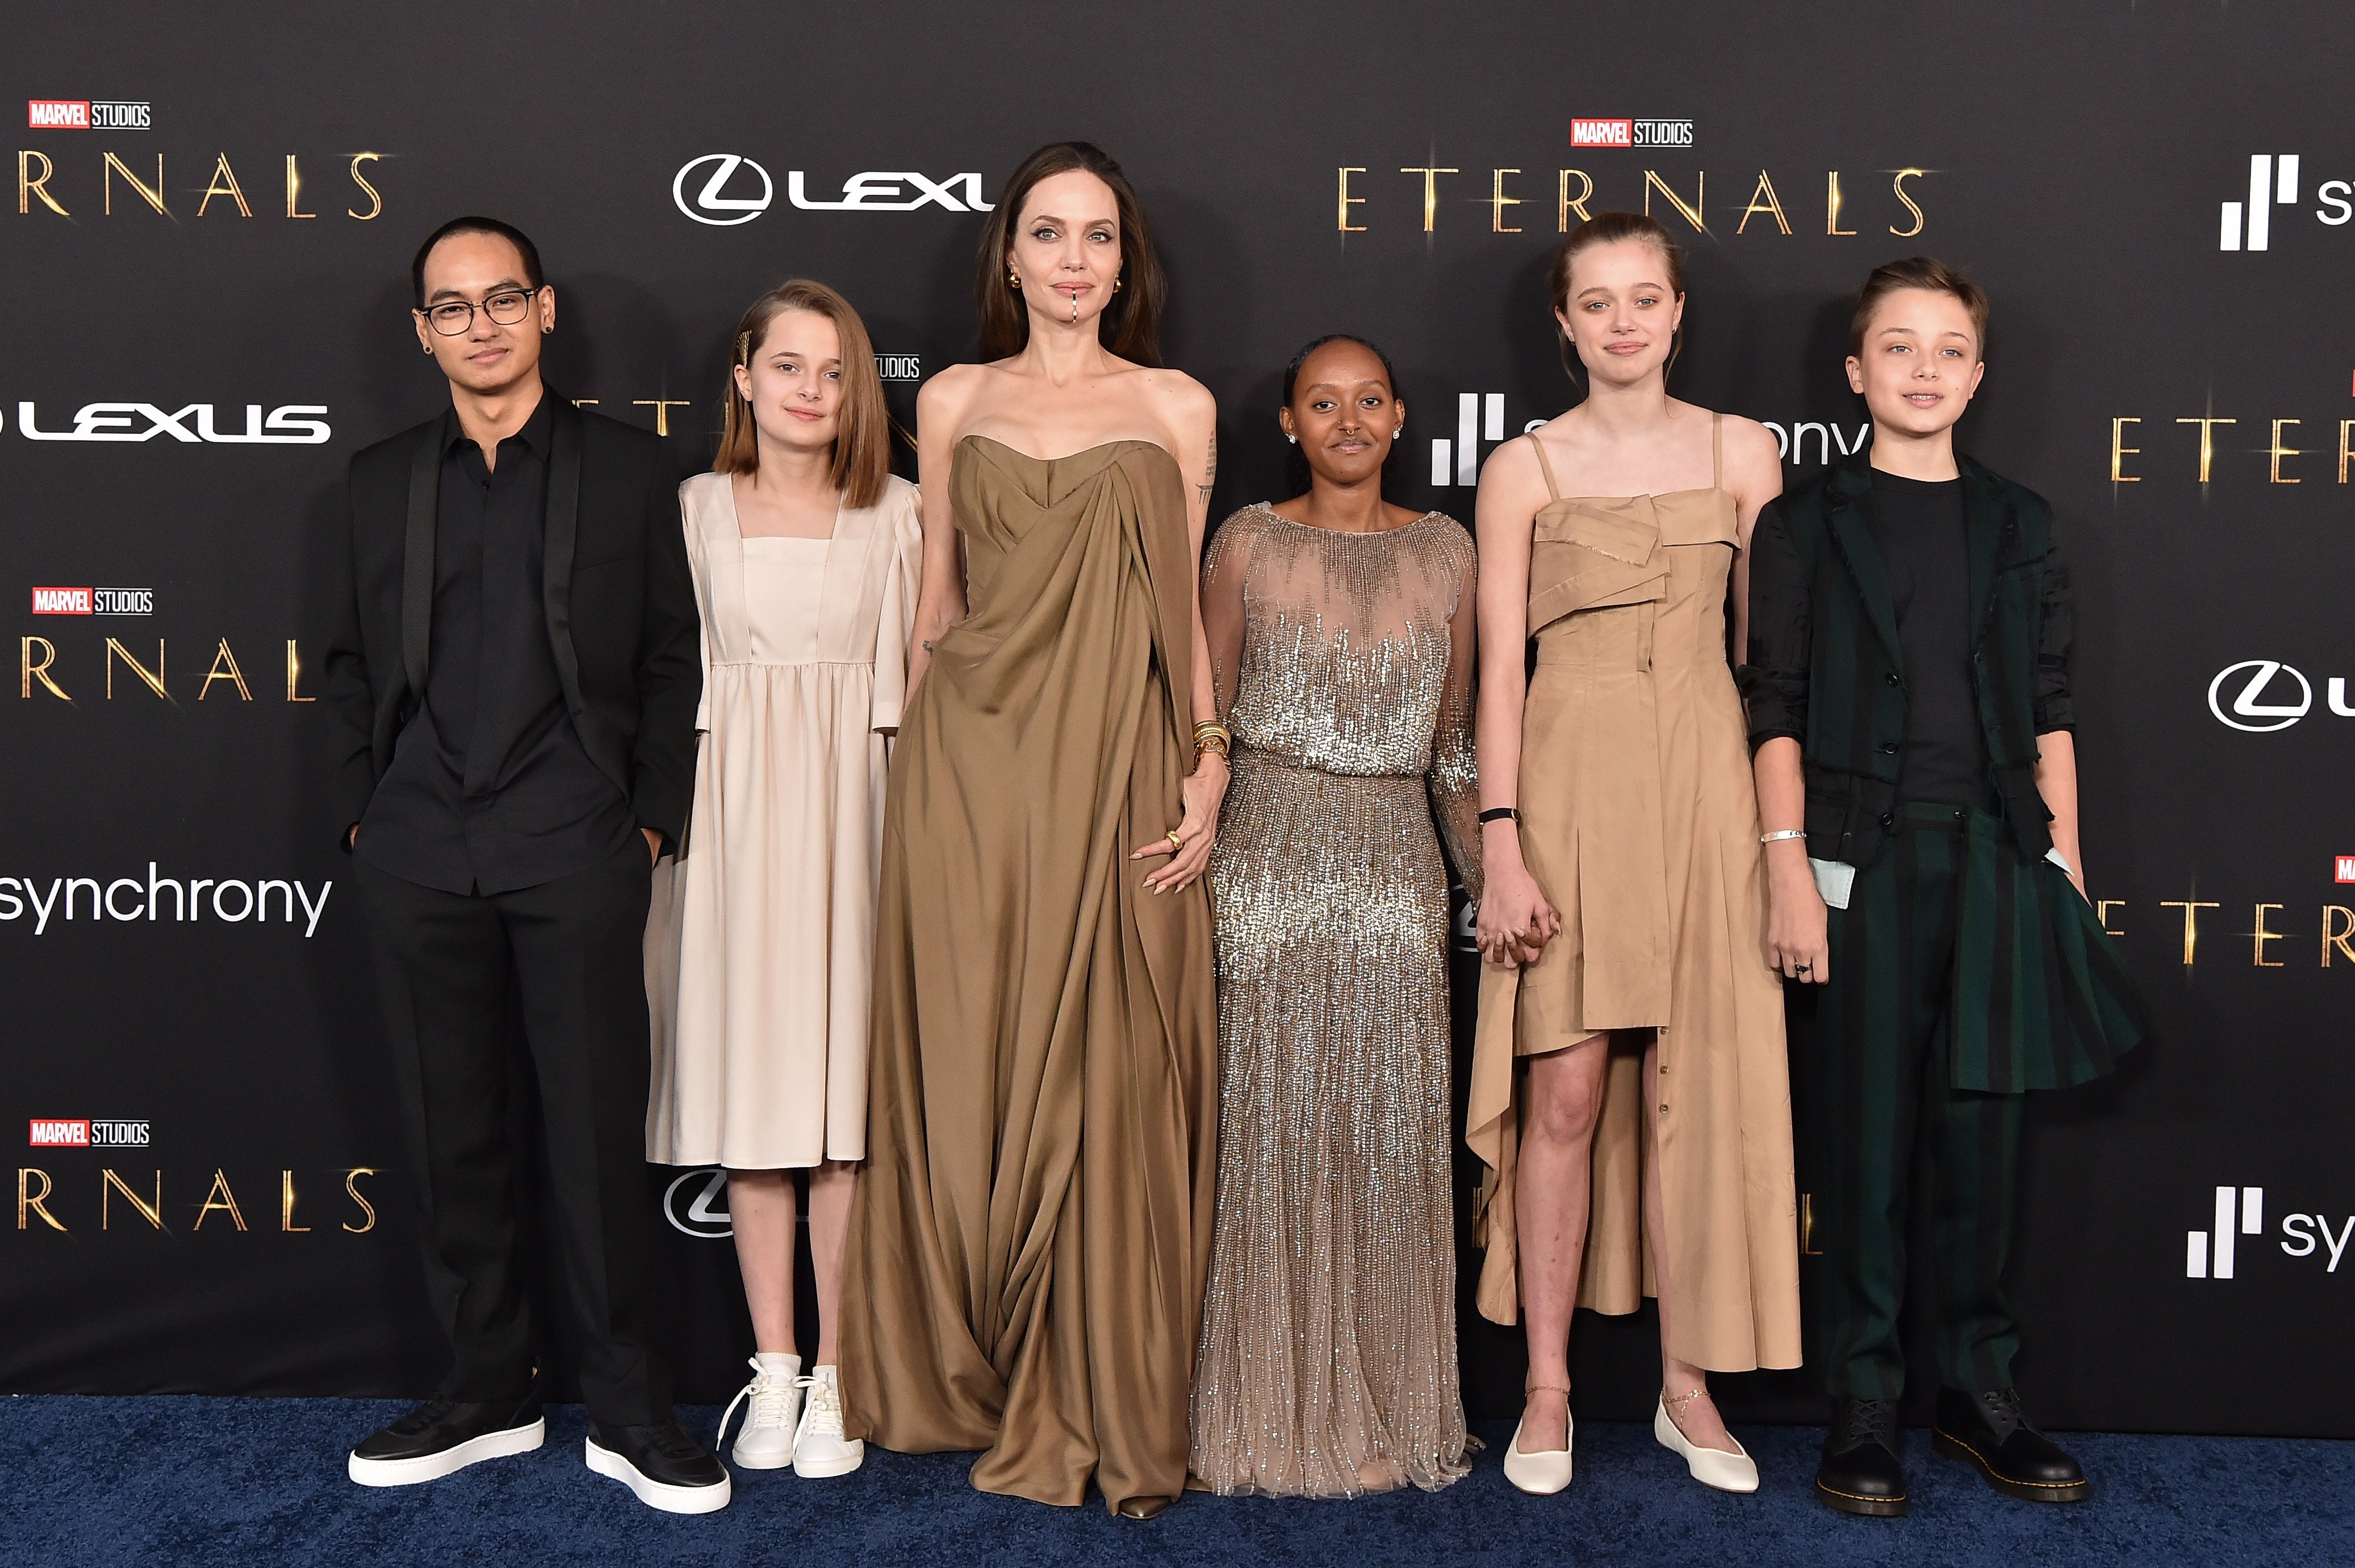 Maddox, Vivienne, Angelina Jolie, Knox, Shiloh y Zahara Jolie-Pitt en el estreno en Los Ángeles de "Eternals" de Marvel Studios, el 18 de octubre de 2021 en Los Ángeles, California. | Foto: Getty Images